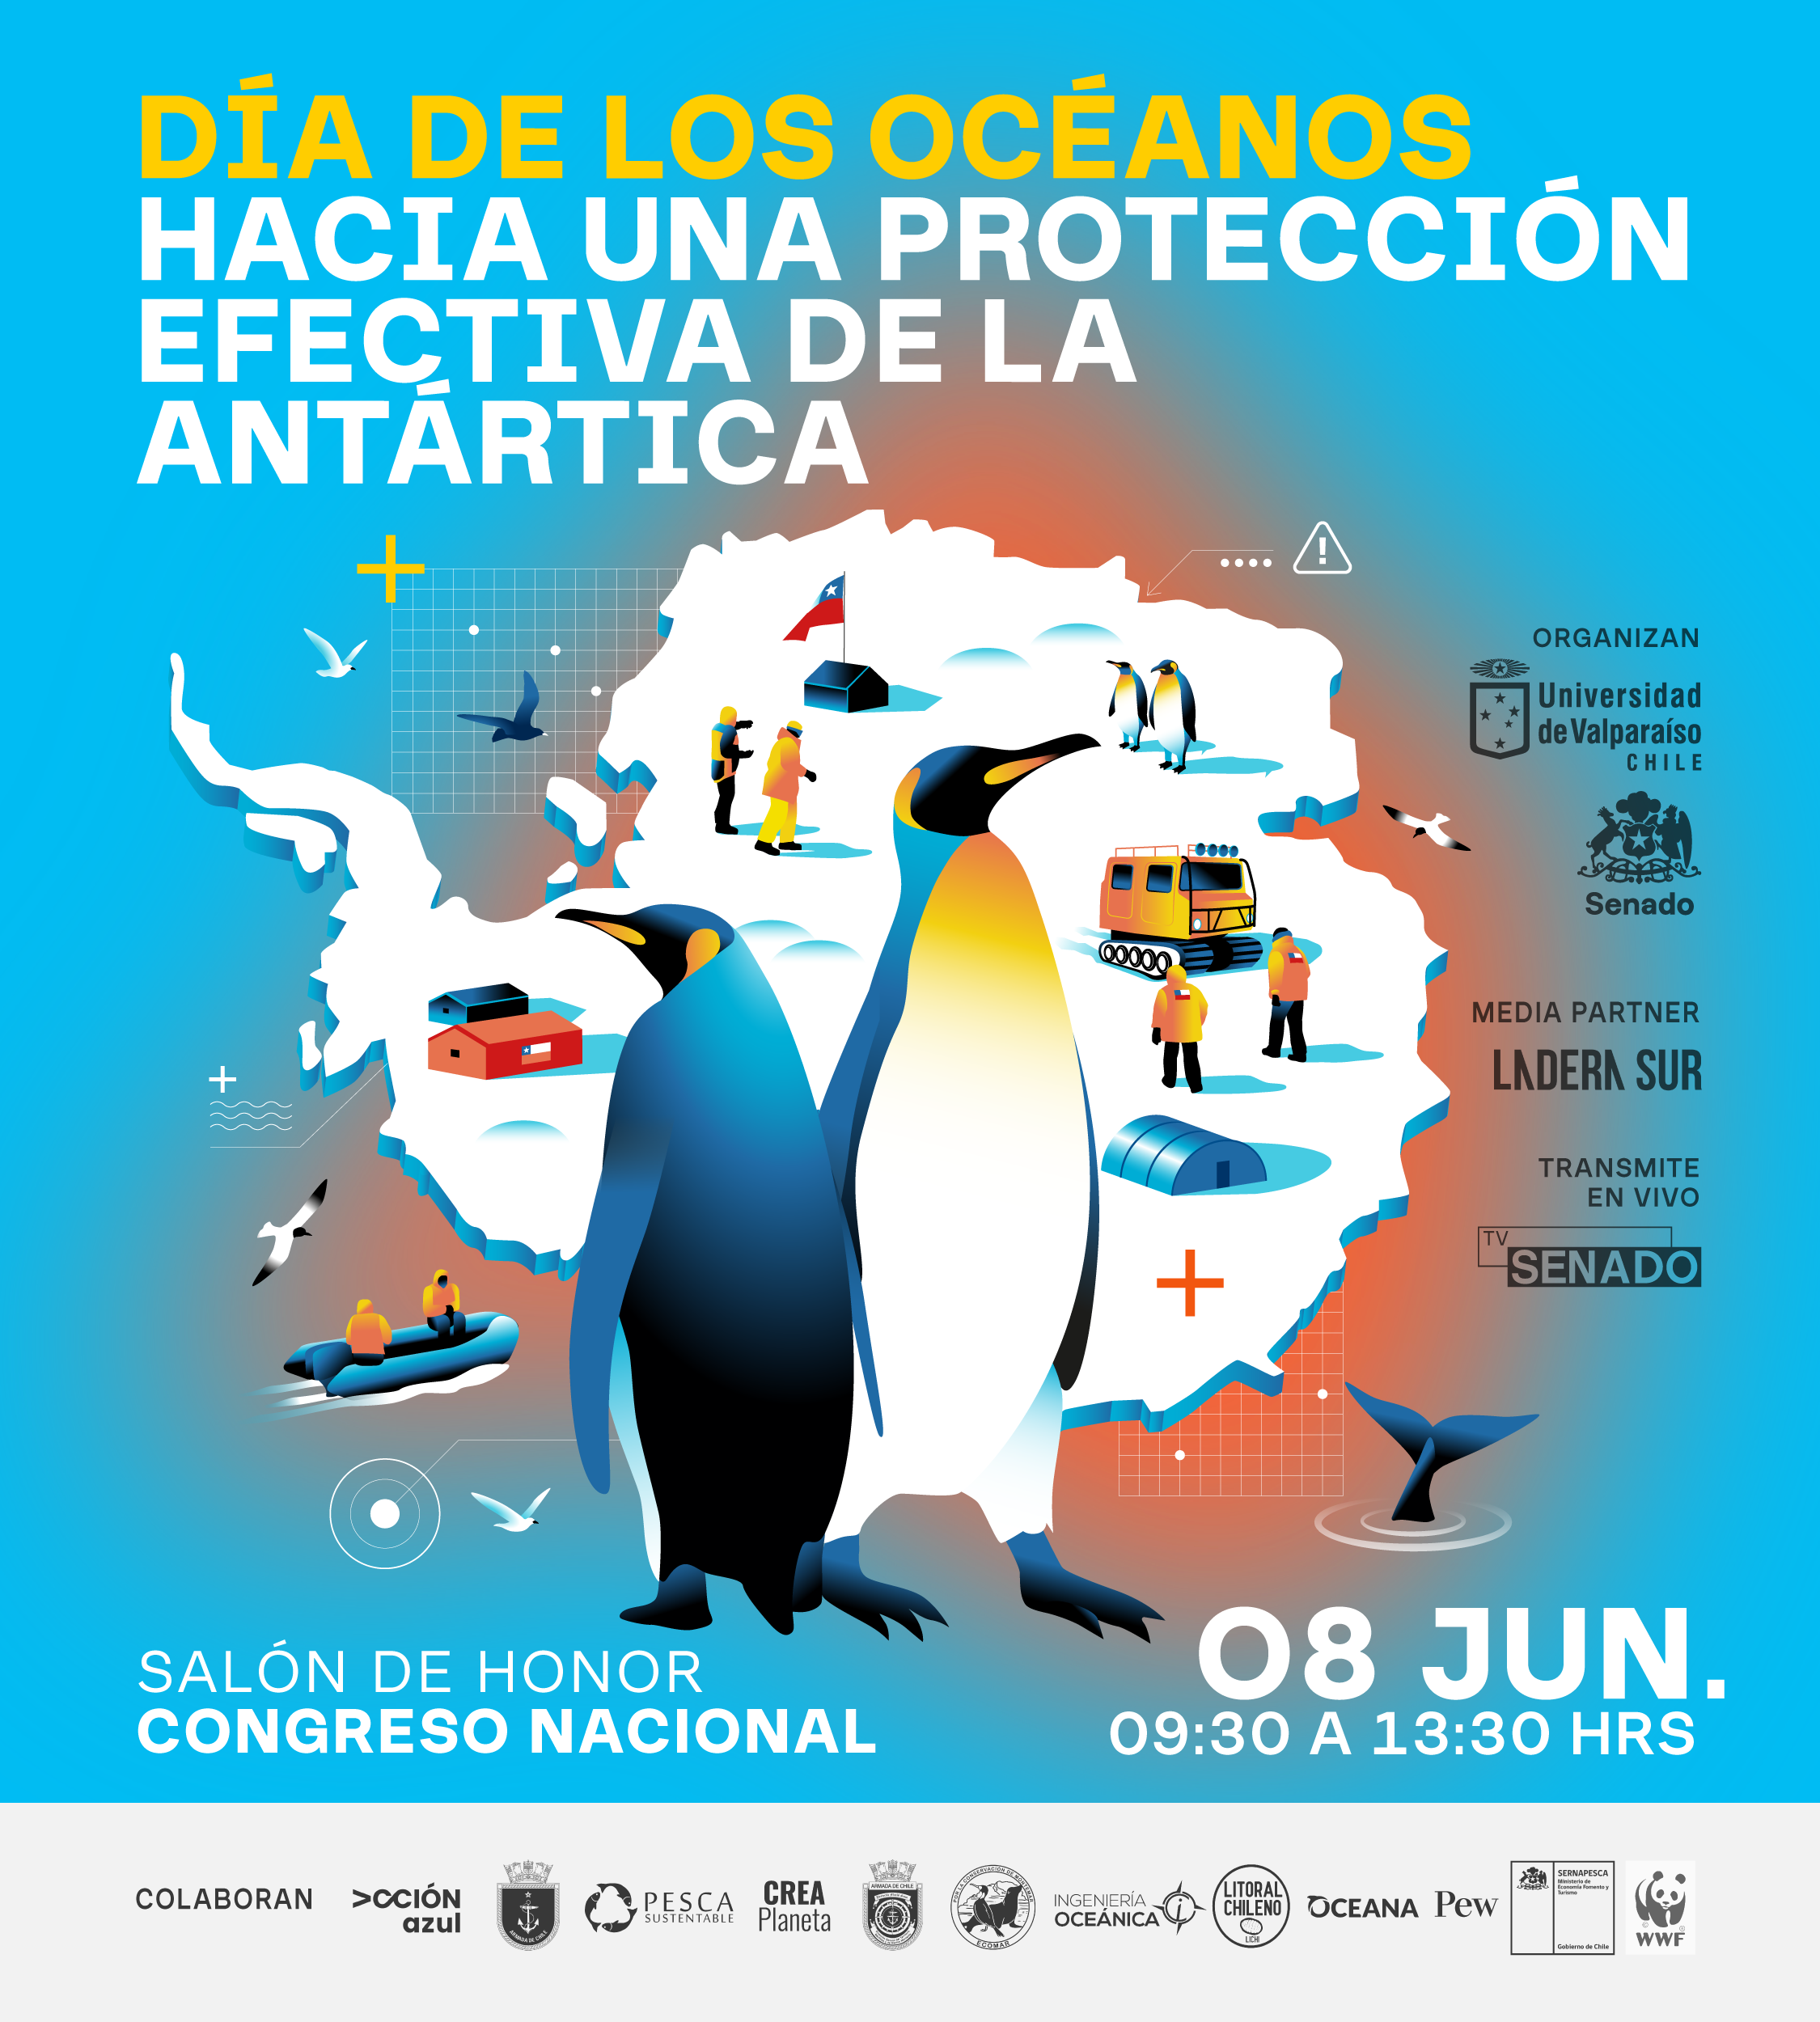 Afiche oficial del día de los océanos en el Congreso Nacional